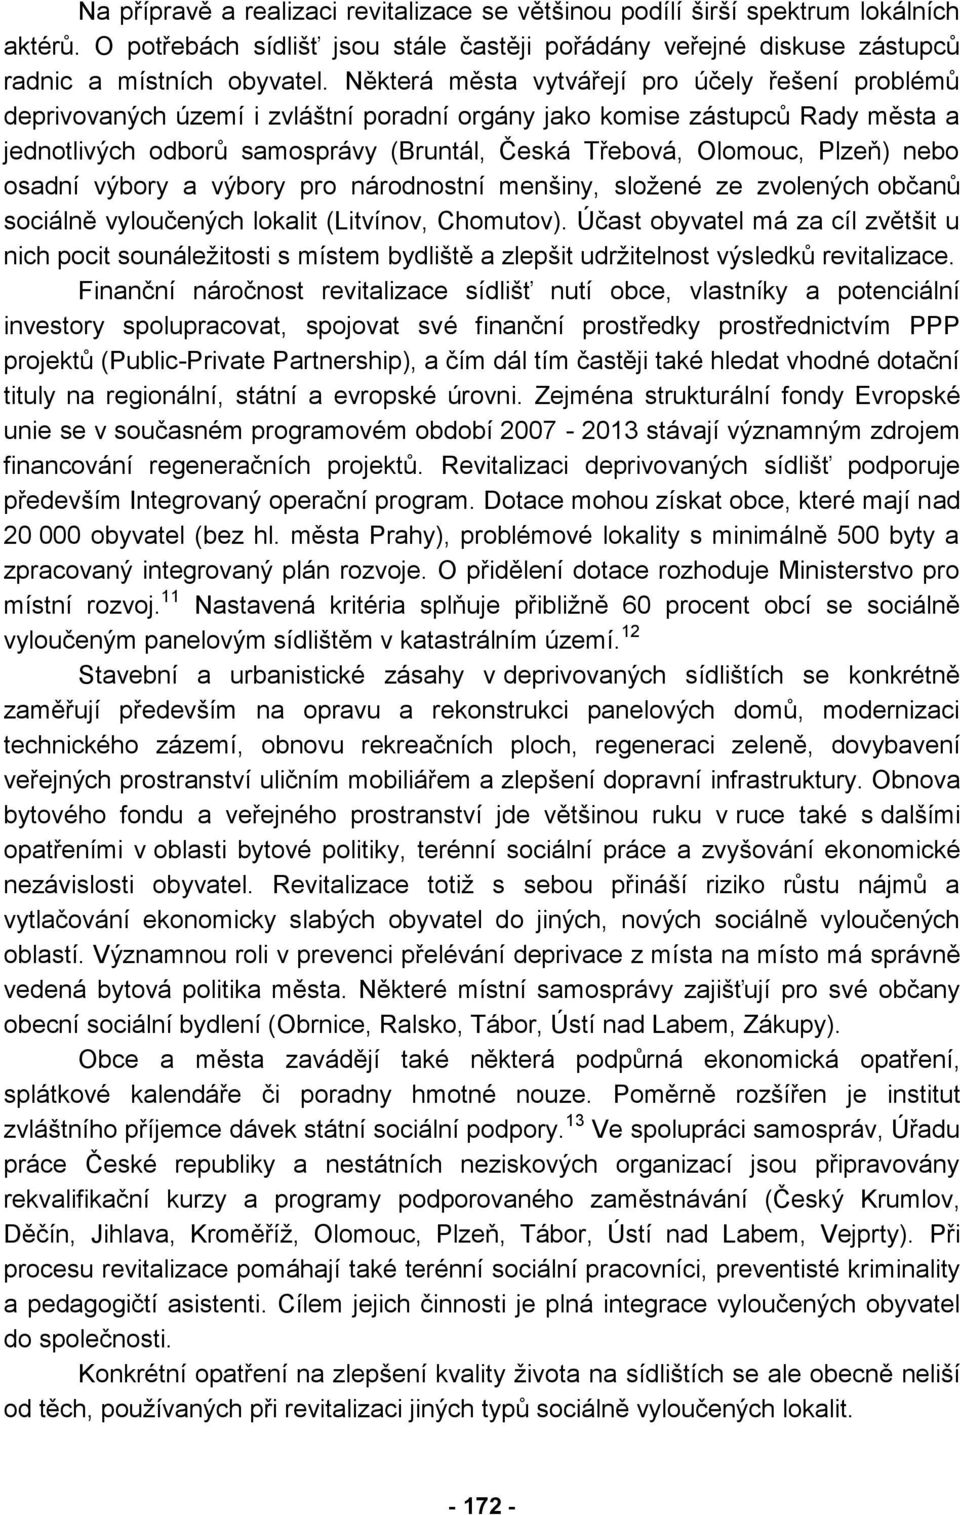 Plzeň) nebo osadní výbory a výbory pro národnostní menšiny, složené ze zvolených občanů sociálně vyloučených lokalit (Litvínov, Chomutov).